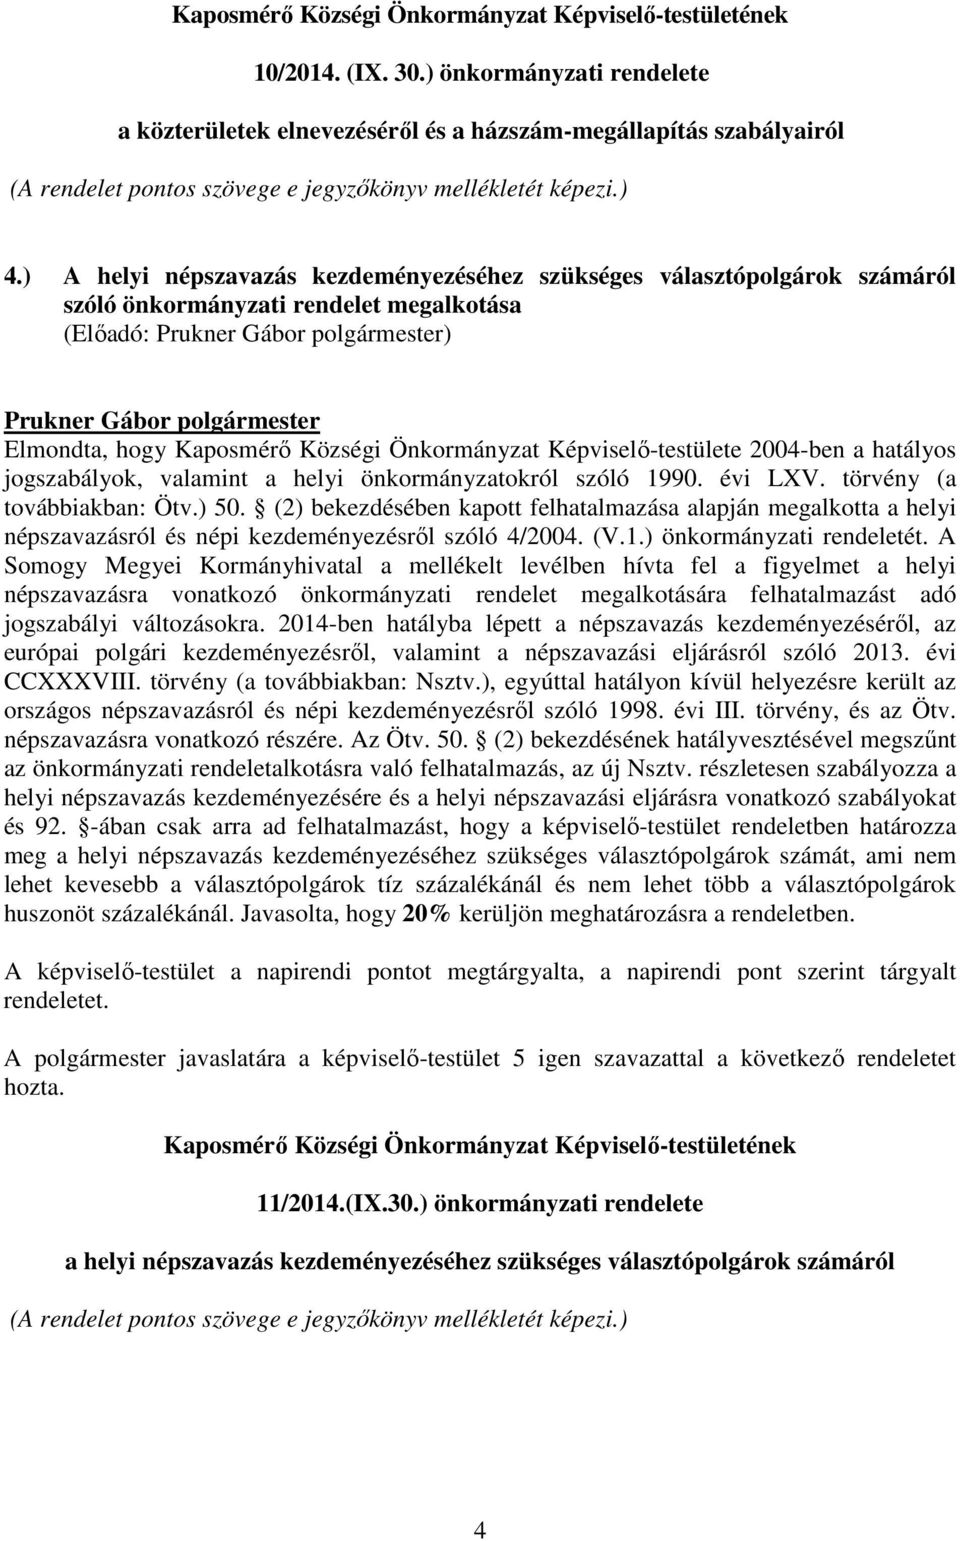 ) A helyi népszavazás kezdeményezéséhez szükséges választópolgárok számáról szóló önkormányzati rendelet megalkotása Elmondta, hogy Kaposmérı Községi Önkormányzat Képviselı-testülete 2004-ben a